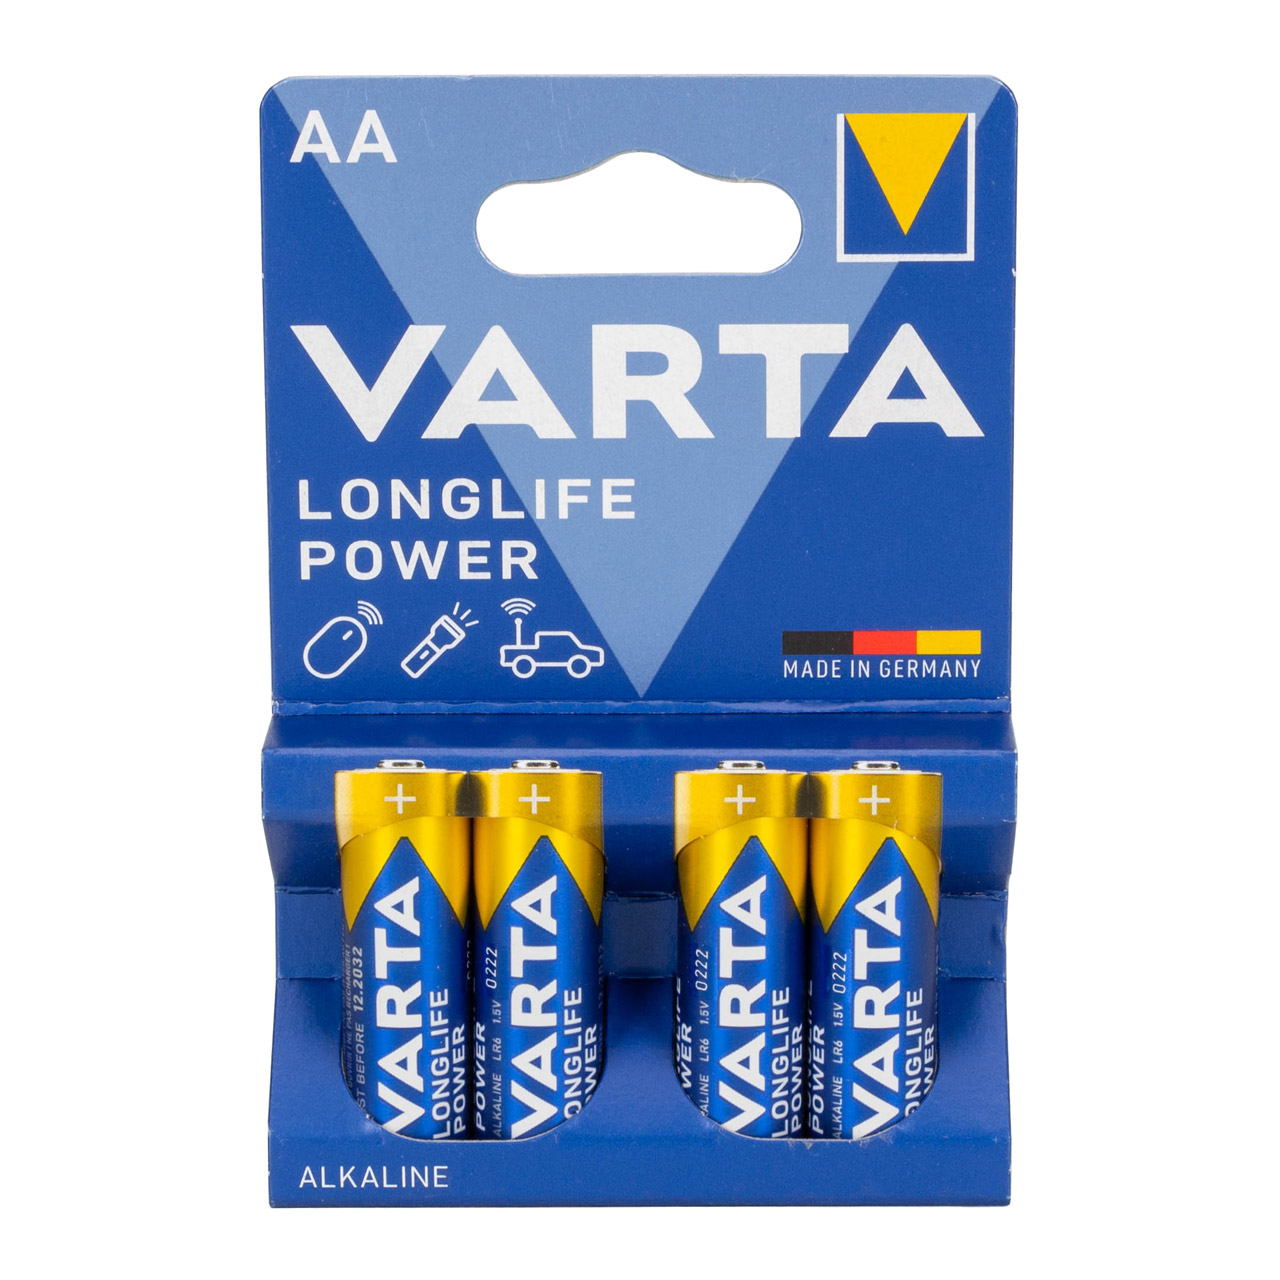 16x VARTA LONGLIFE POWER ALKALINE Batterie AA MIGNON 4906 LR6 MN1500 1,5V